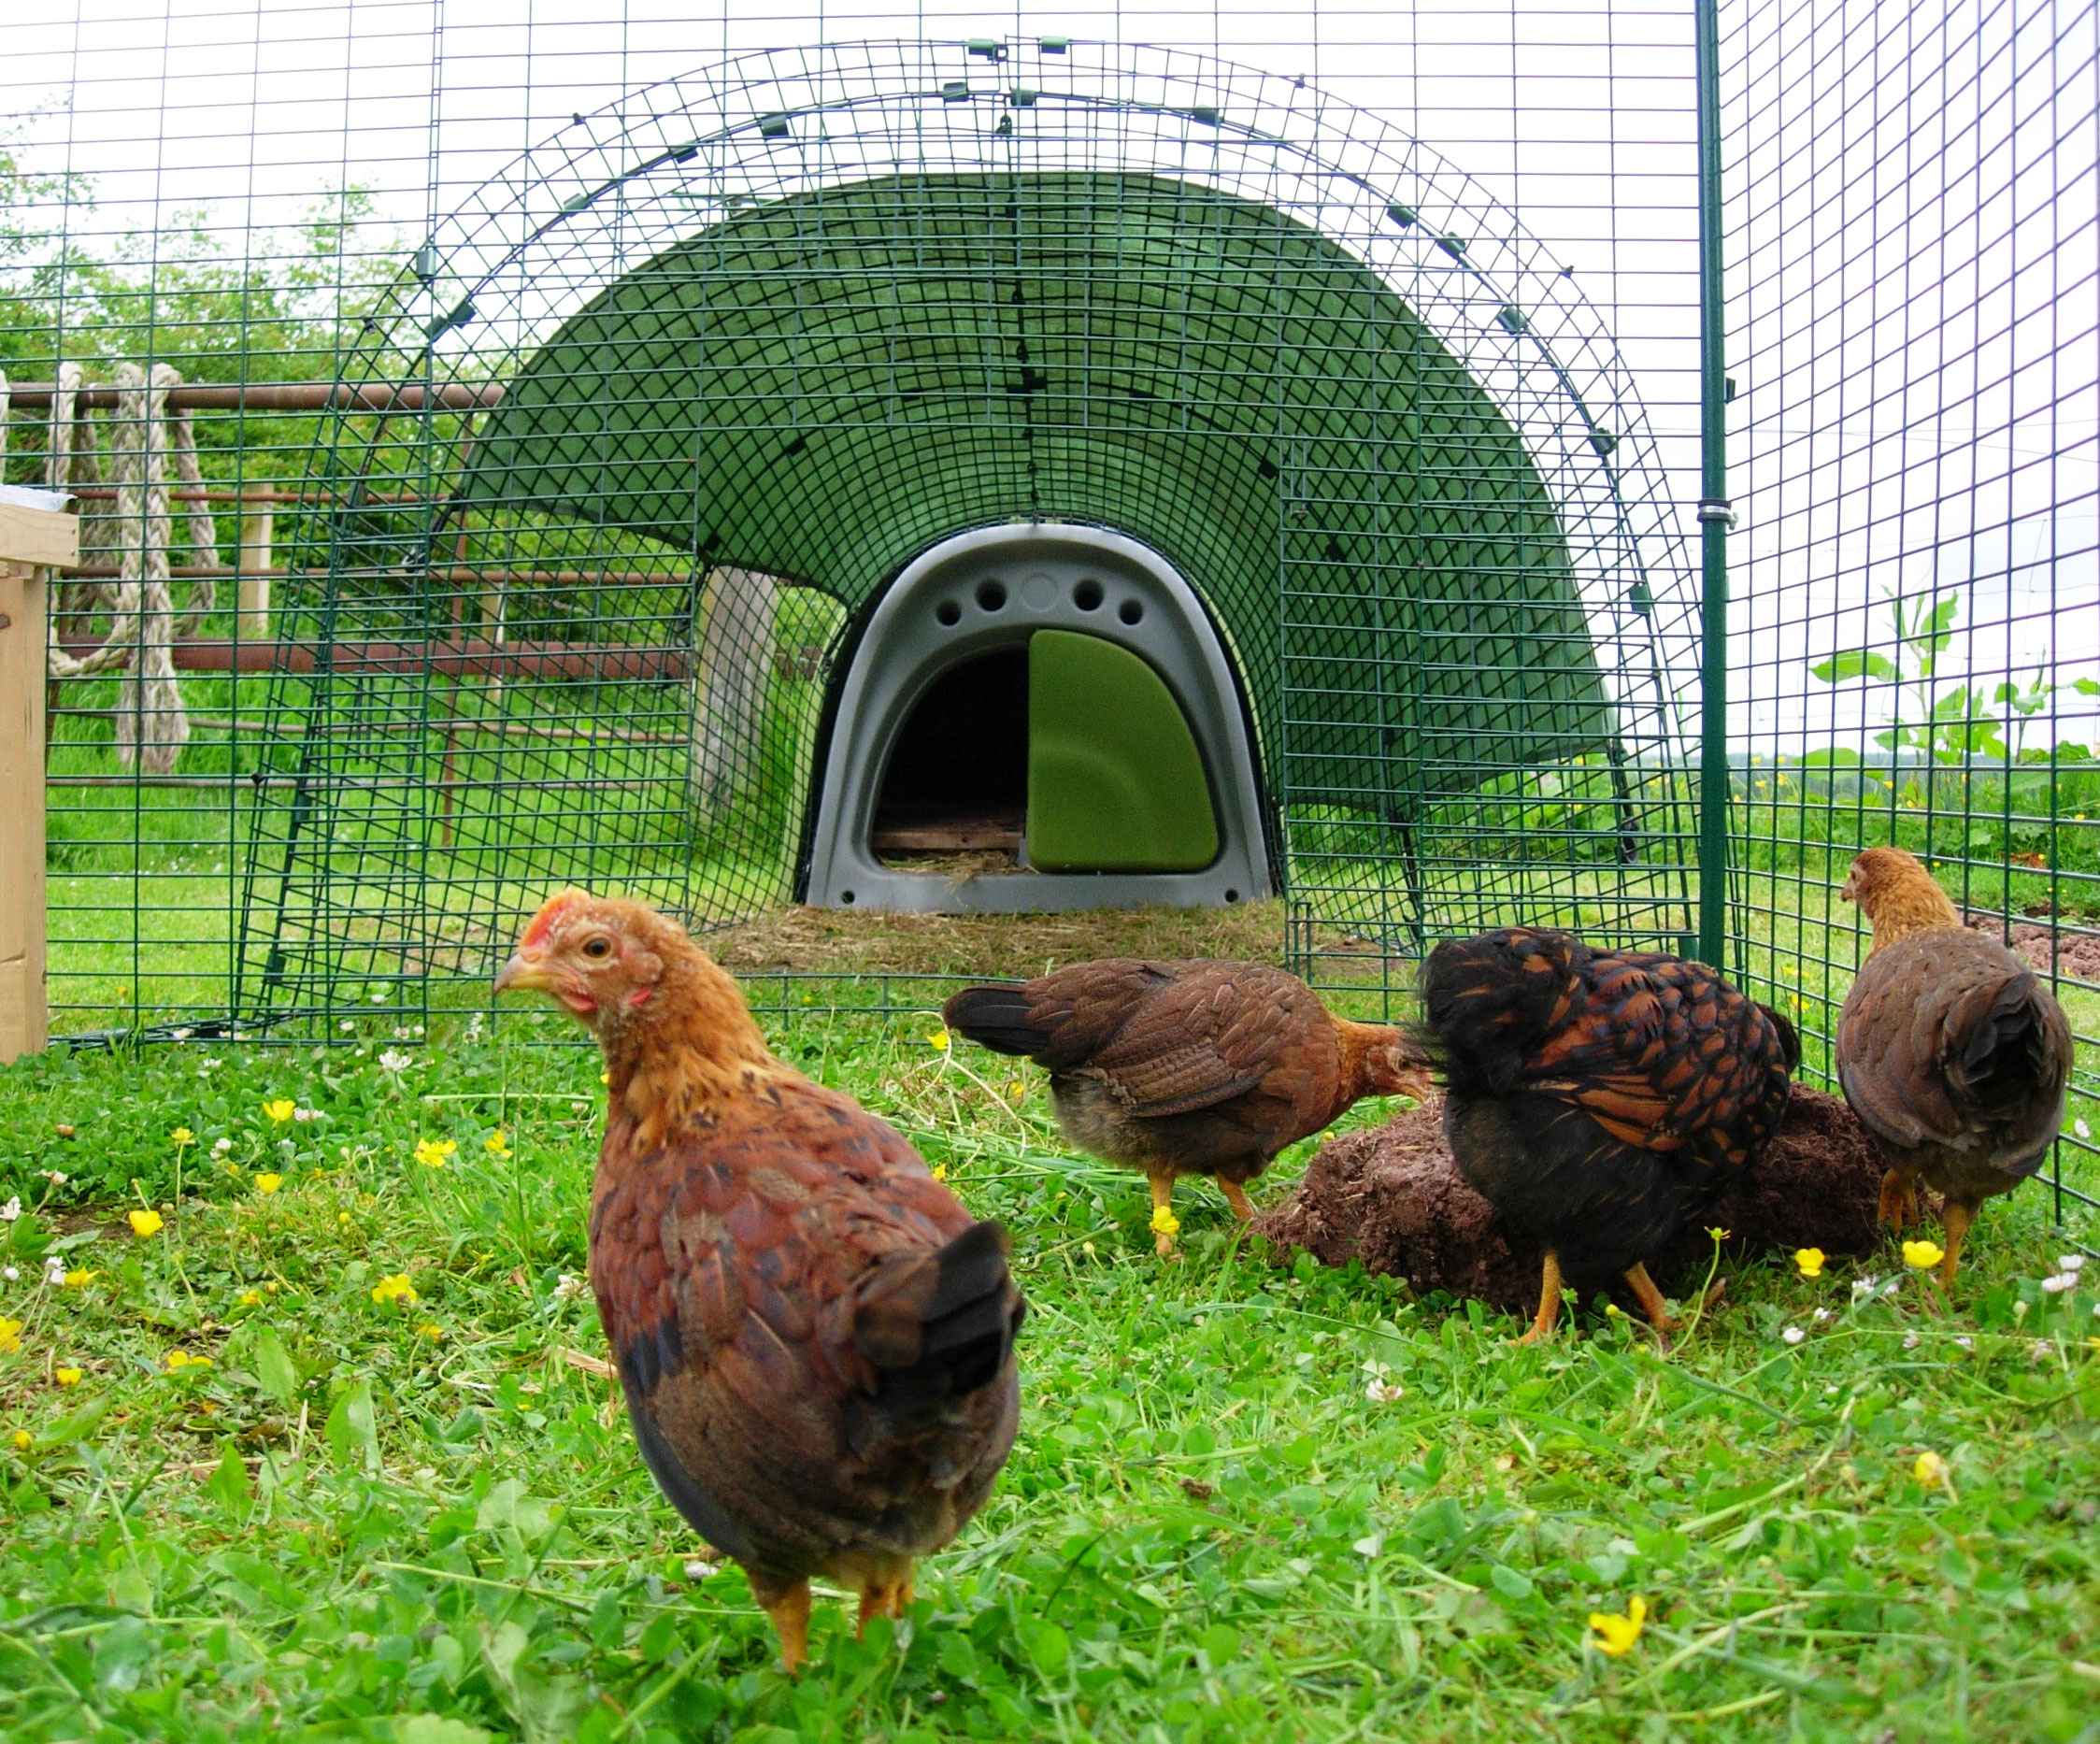 Hønsene elsker at blive lukket ud, så de kan gå frit rundt i haven, men de ved også, at de skal tilbage til huset om natten